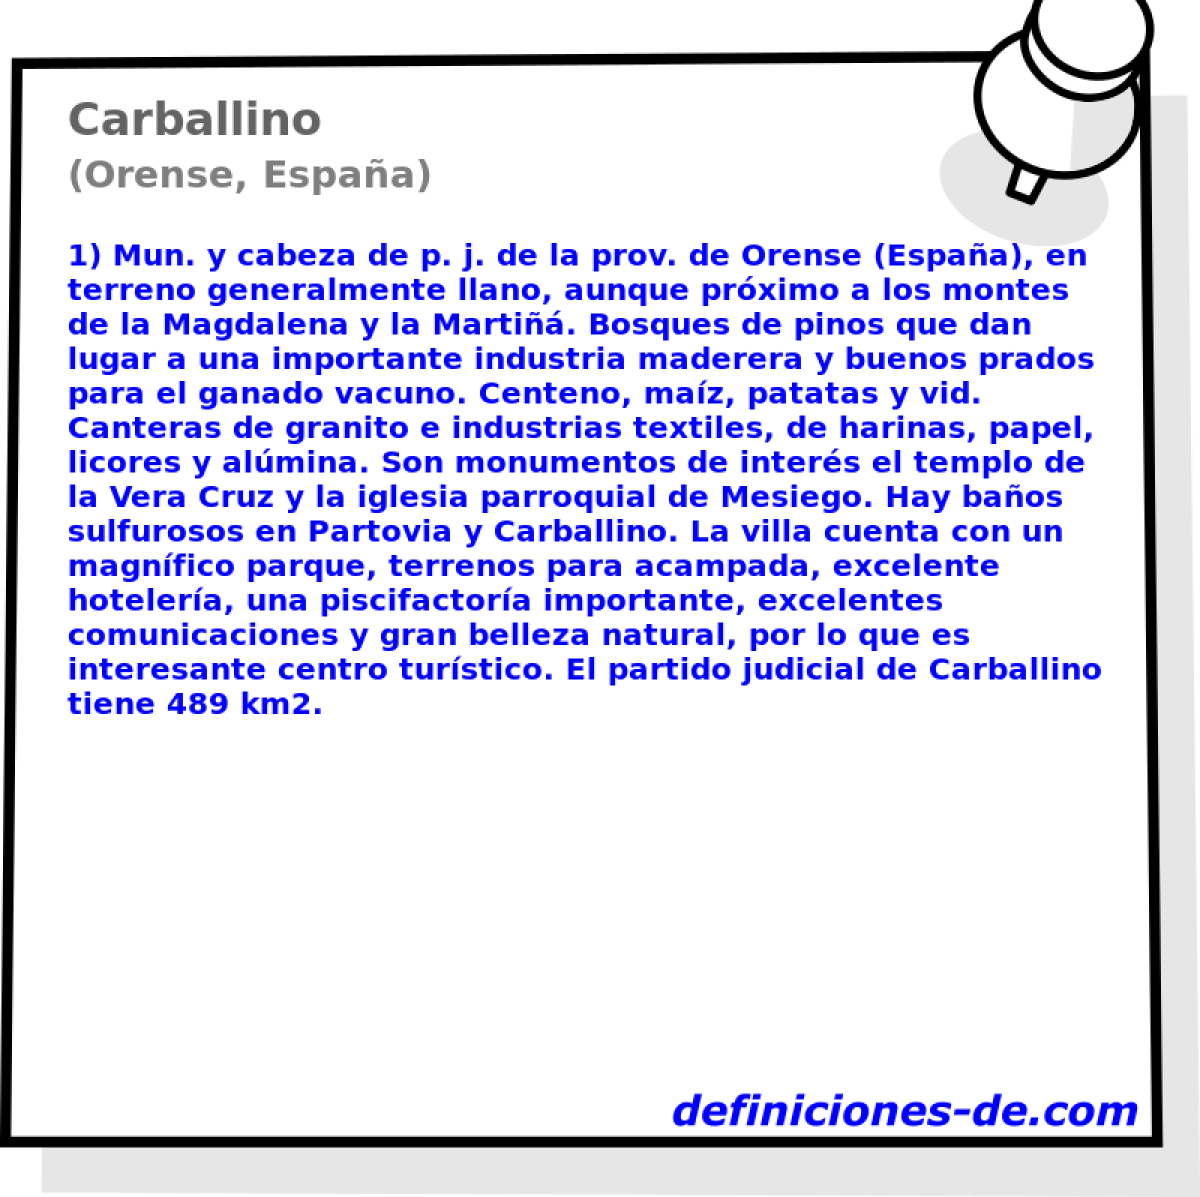 Carballino (Orense, Espaa)